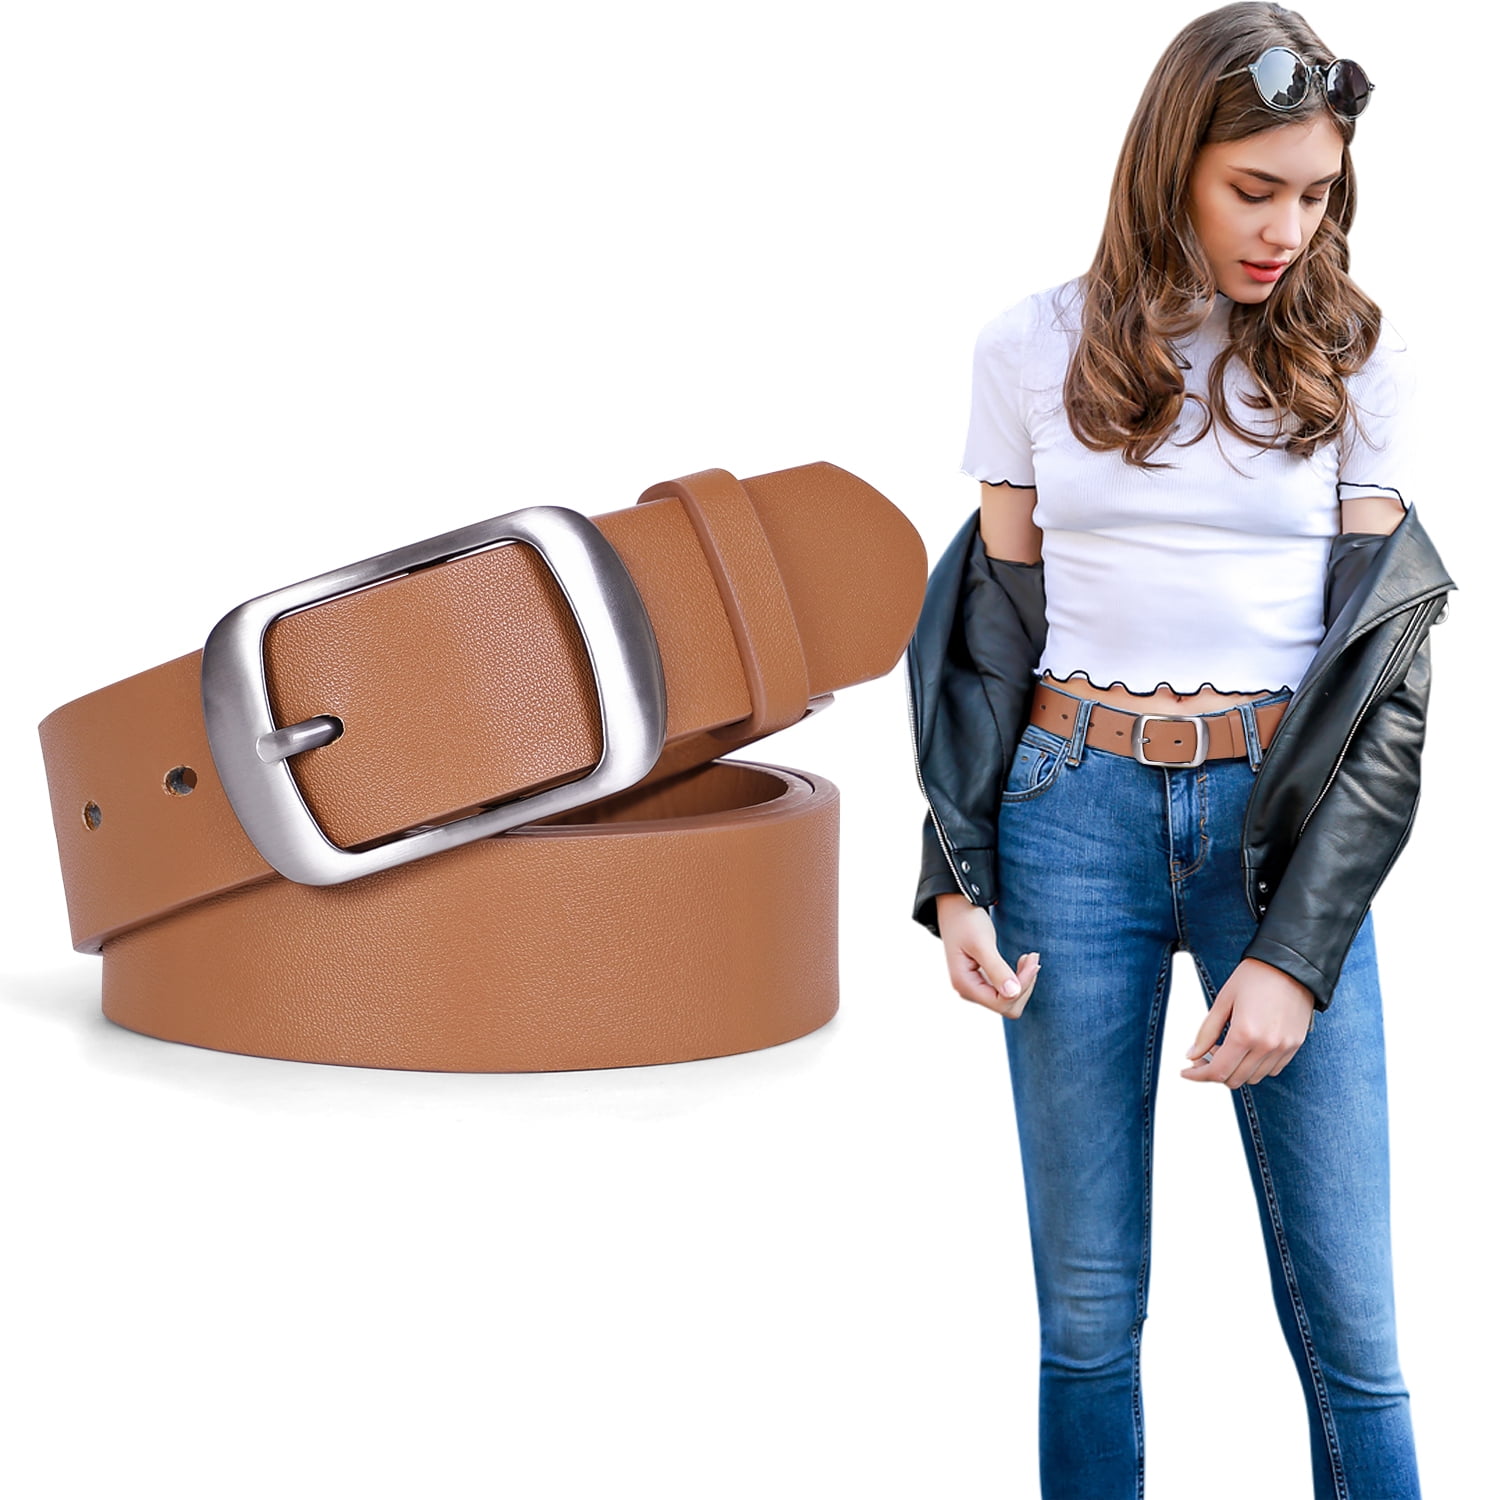 Women Belts Double O-ring Buckle Leather Belt Plus Size Casual Jeans Pants  Belts | eBay